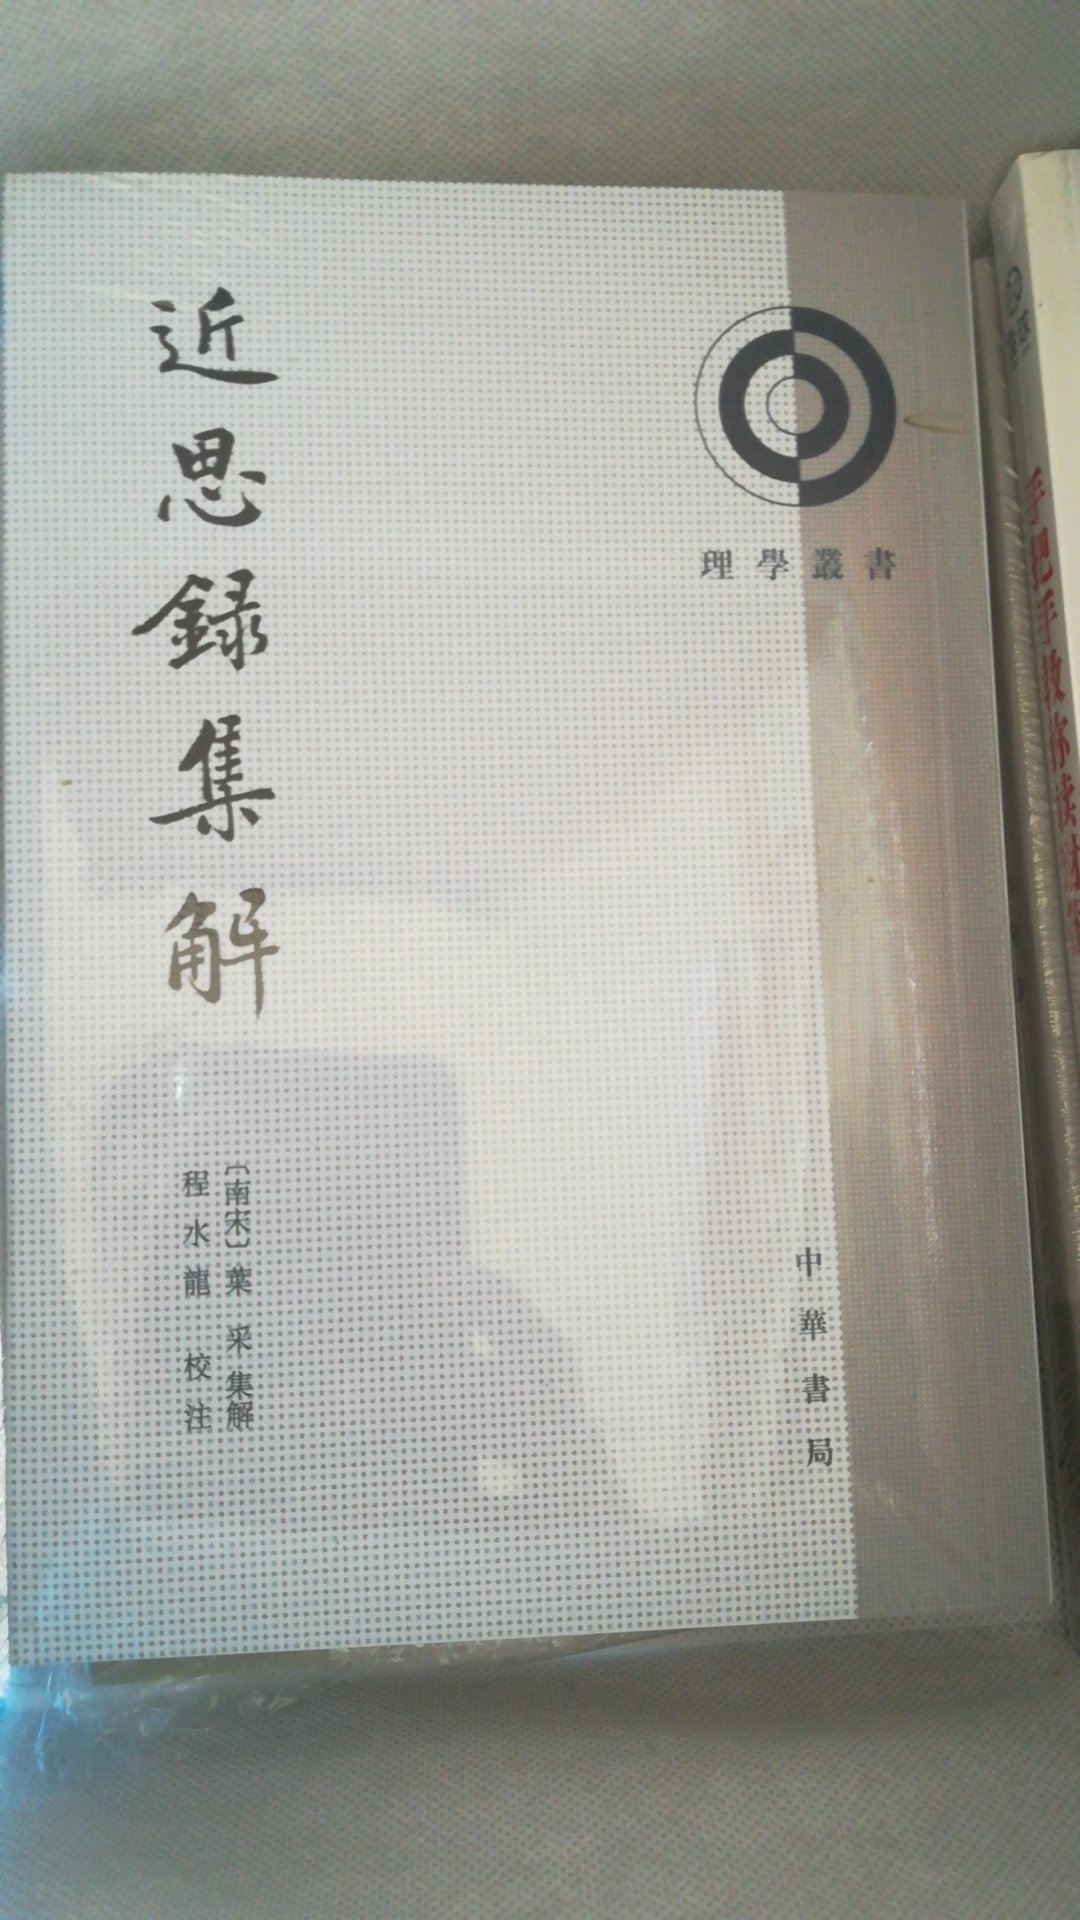 中华书局的书大体都不错。。